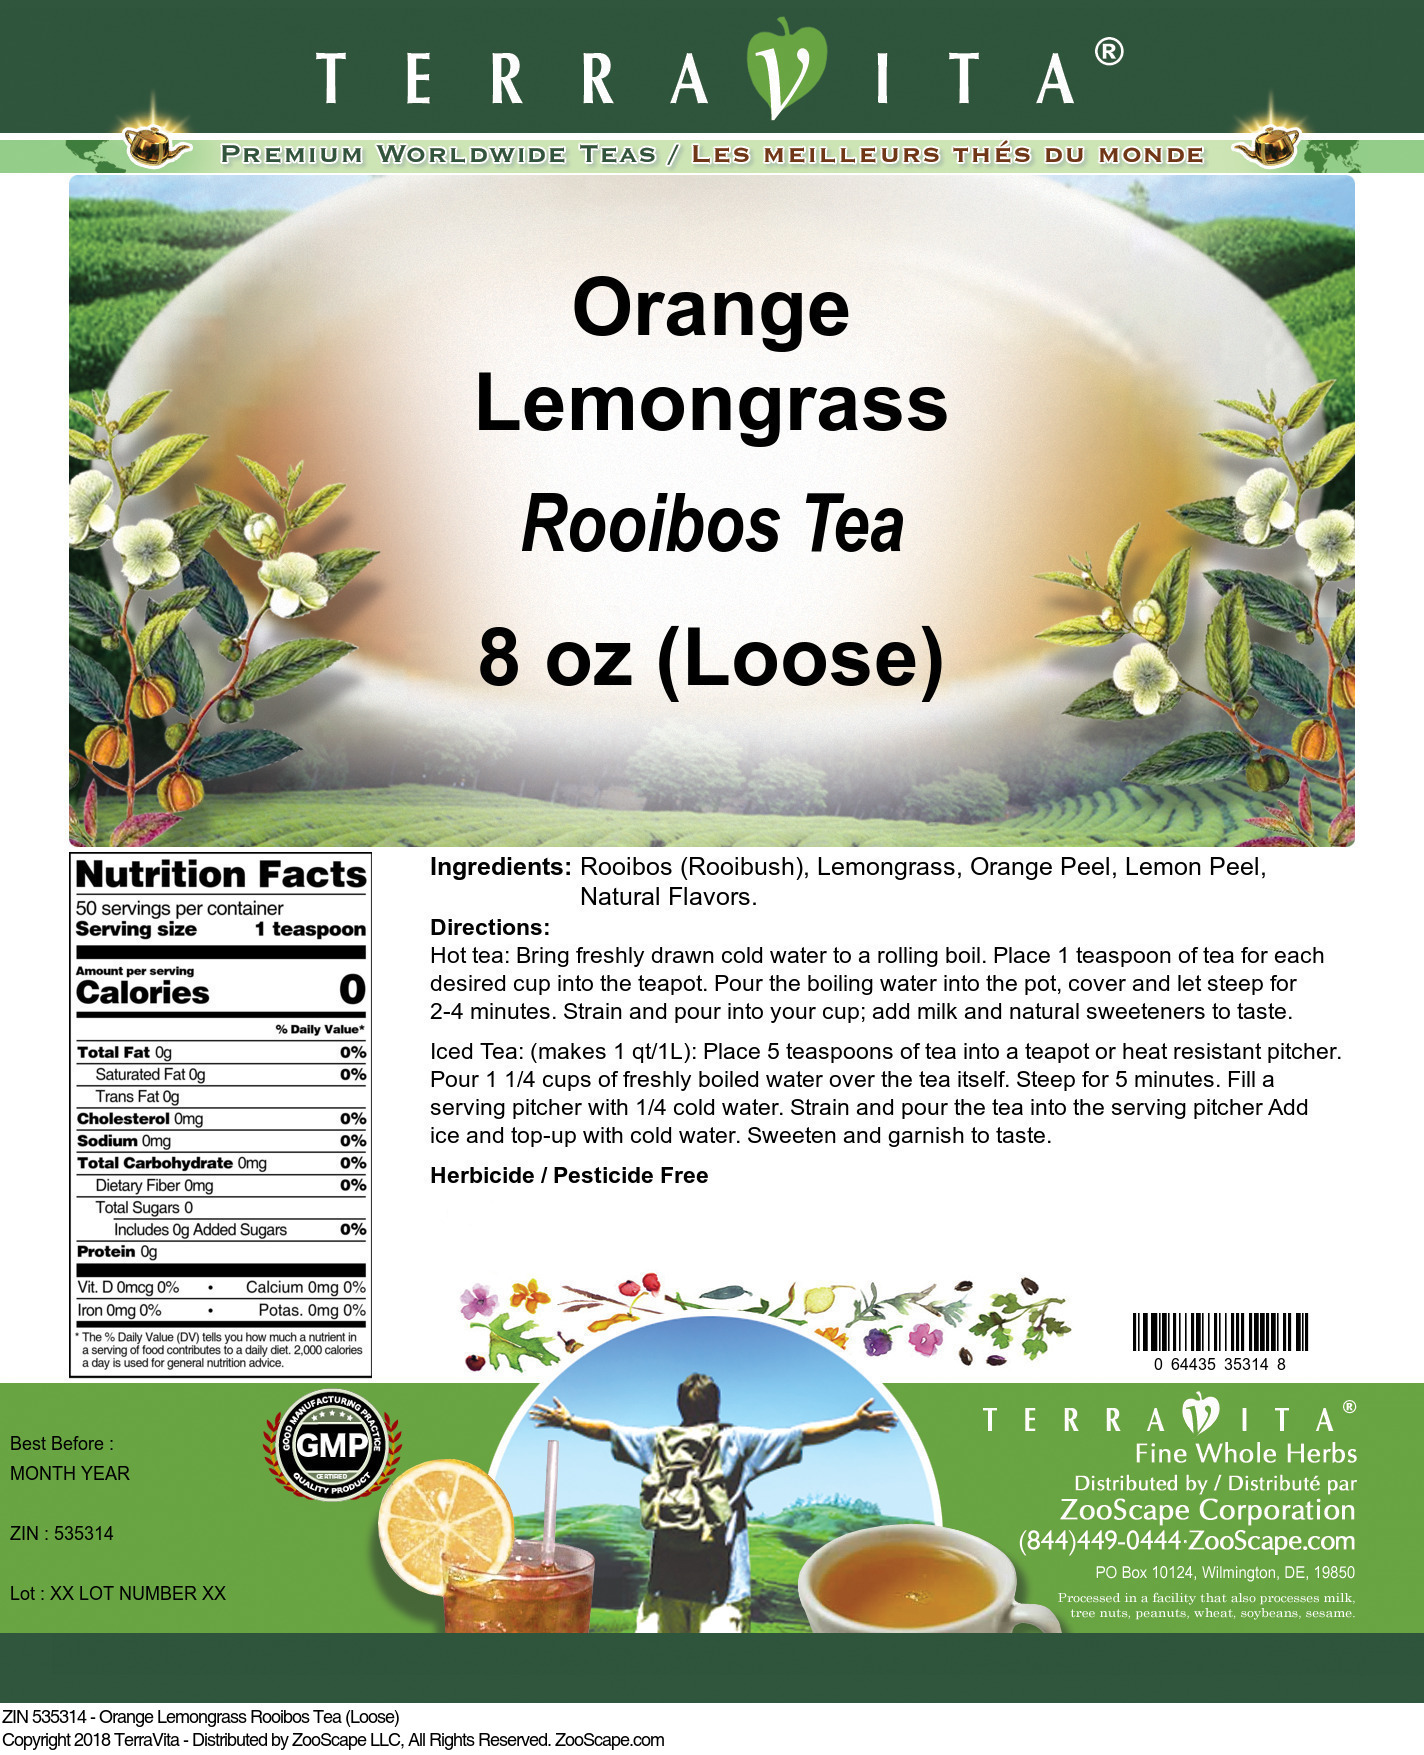 Orange Lemongrass Rooibos Tea (Loose) - Label